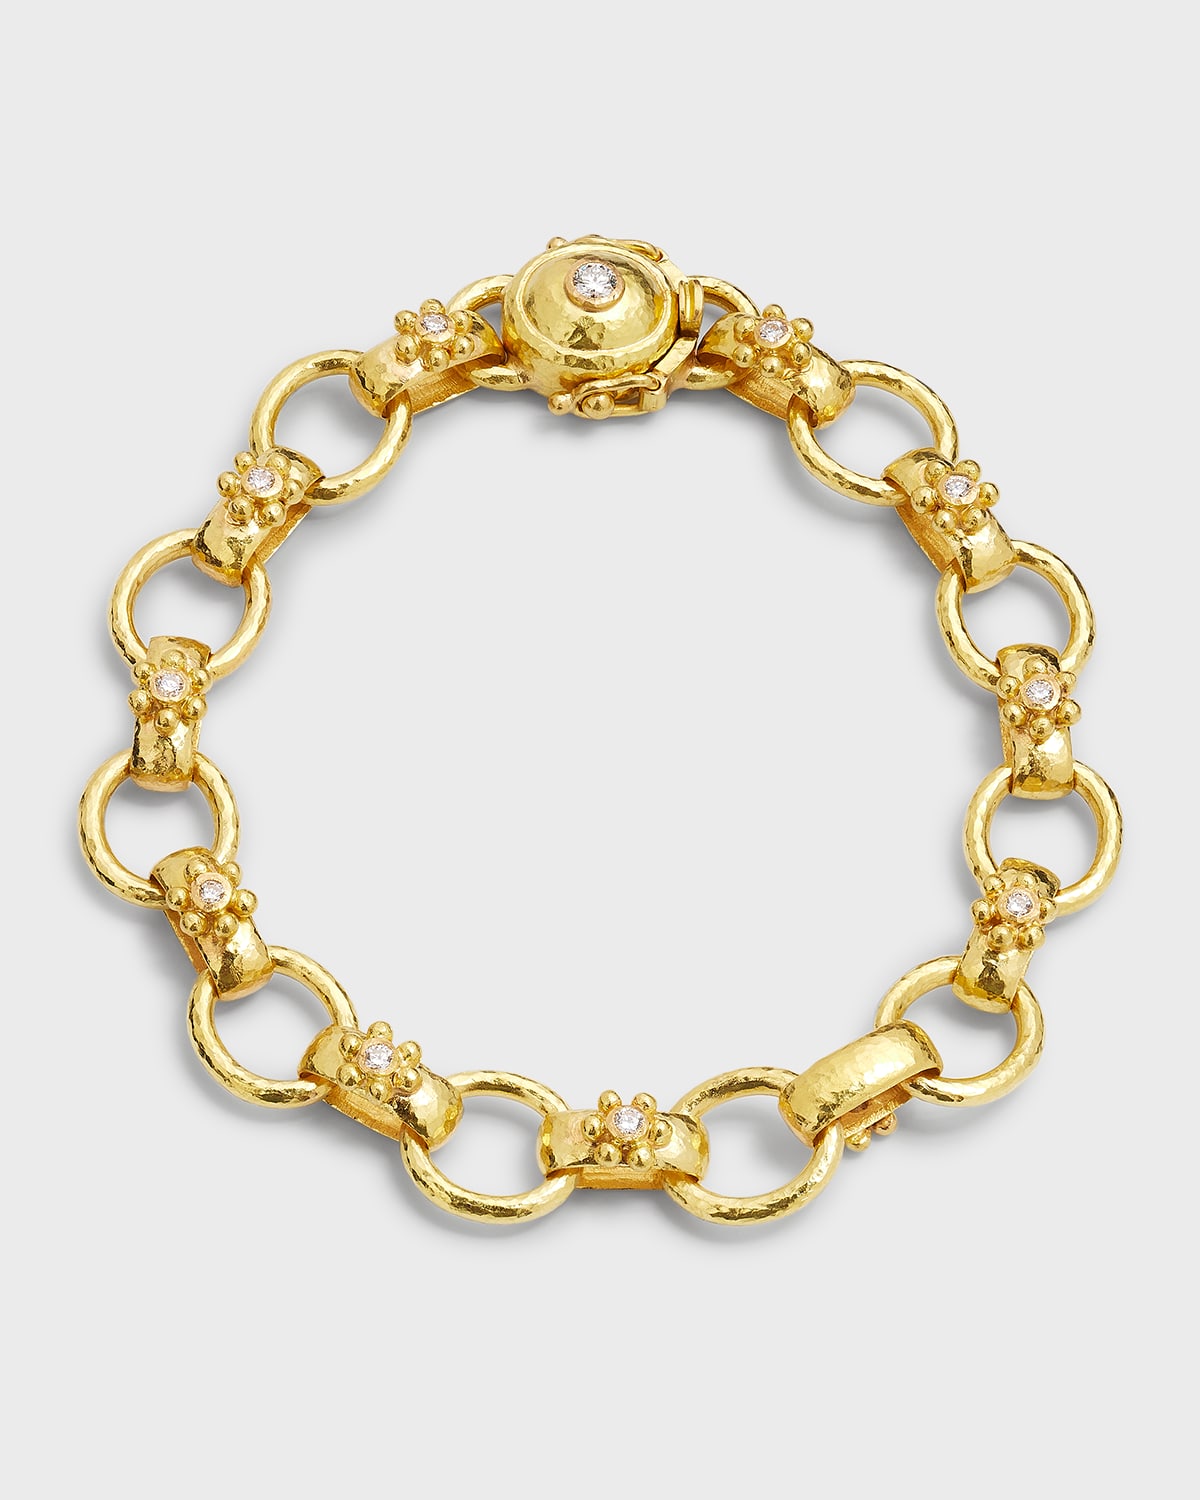 Louis Vuitton Diamond Convertible Necklace Bracelet 18k Gold Charm